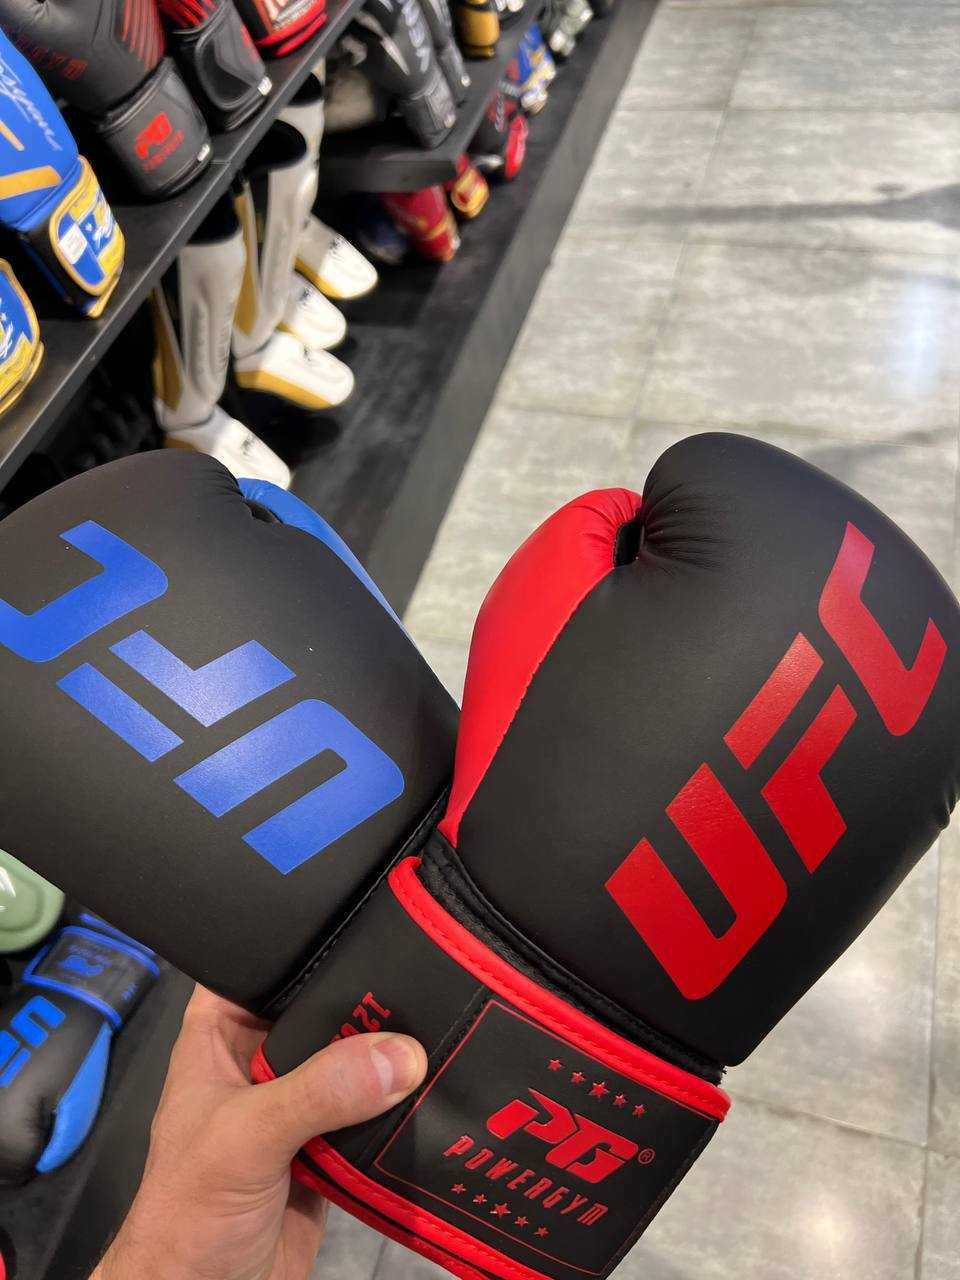 Боксерские перчатки PG UFC